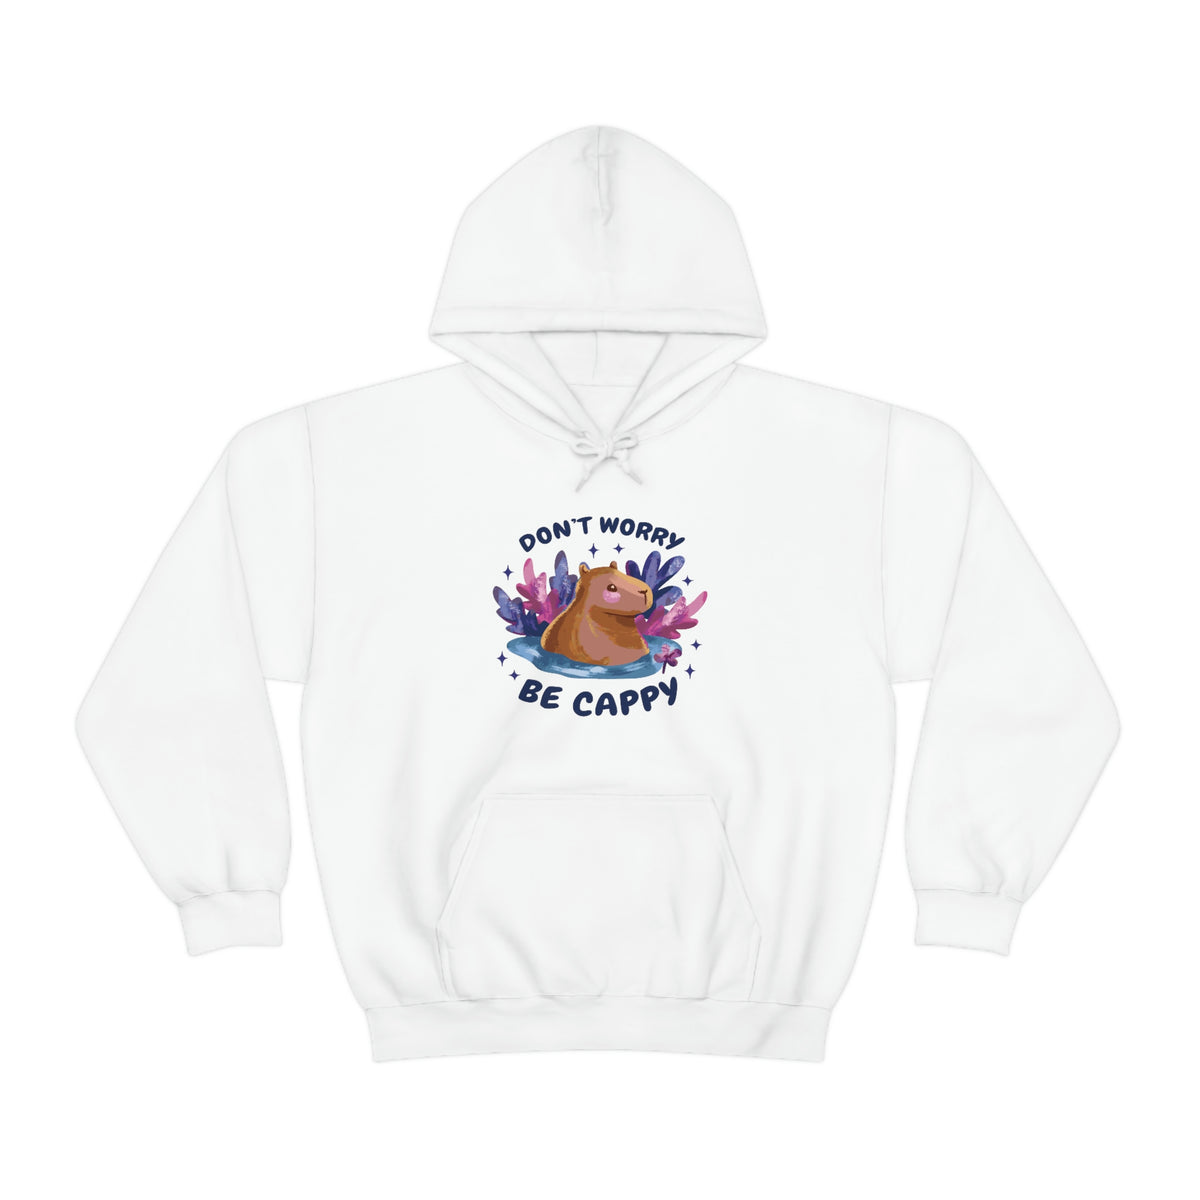 Chill Capybara - Unisex Hoodie